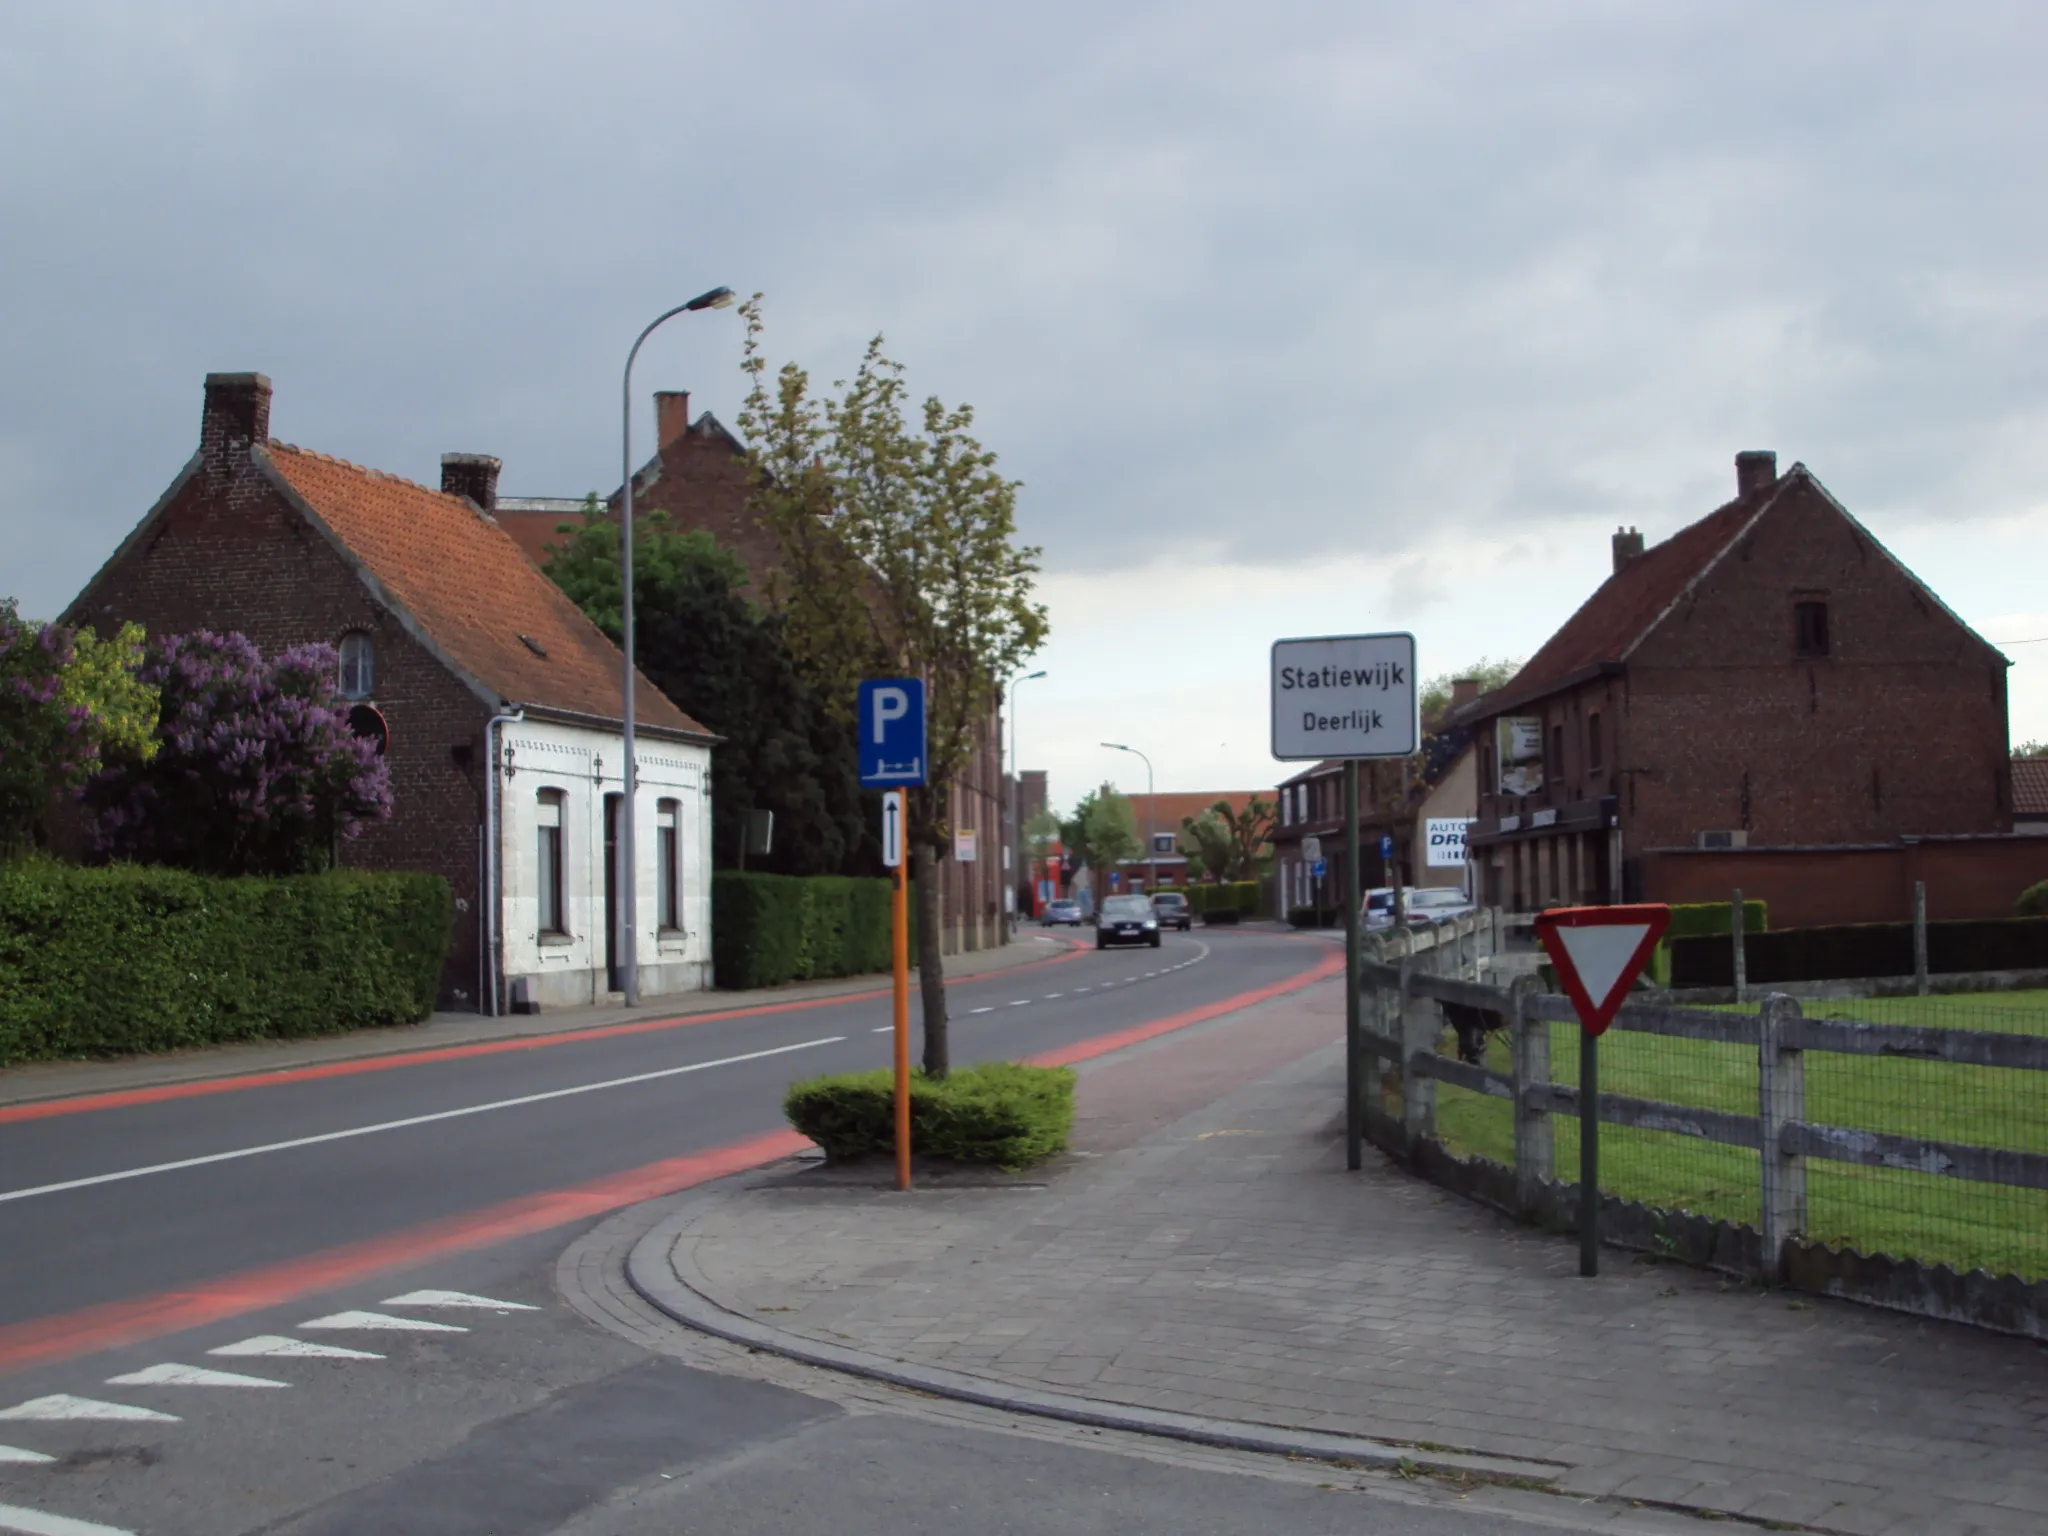 Photo showing: The Statiewijk, a hamlet of Deerlijk